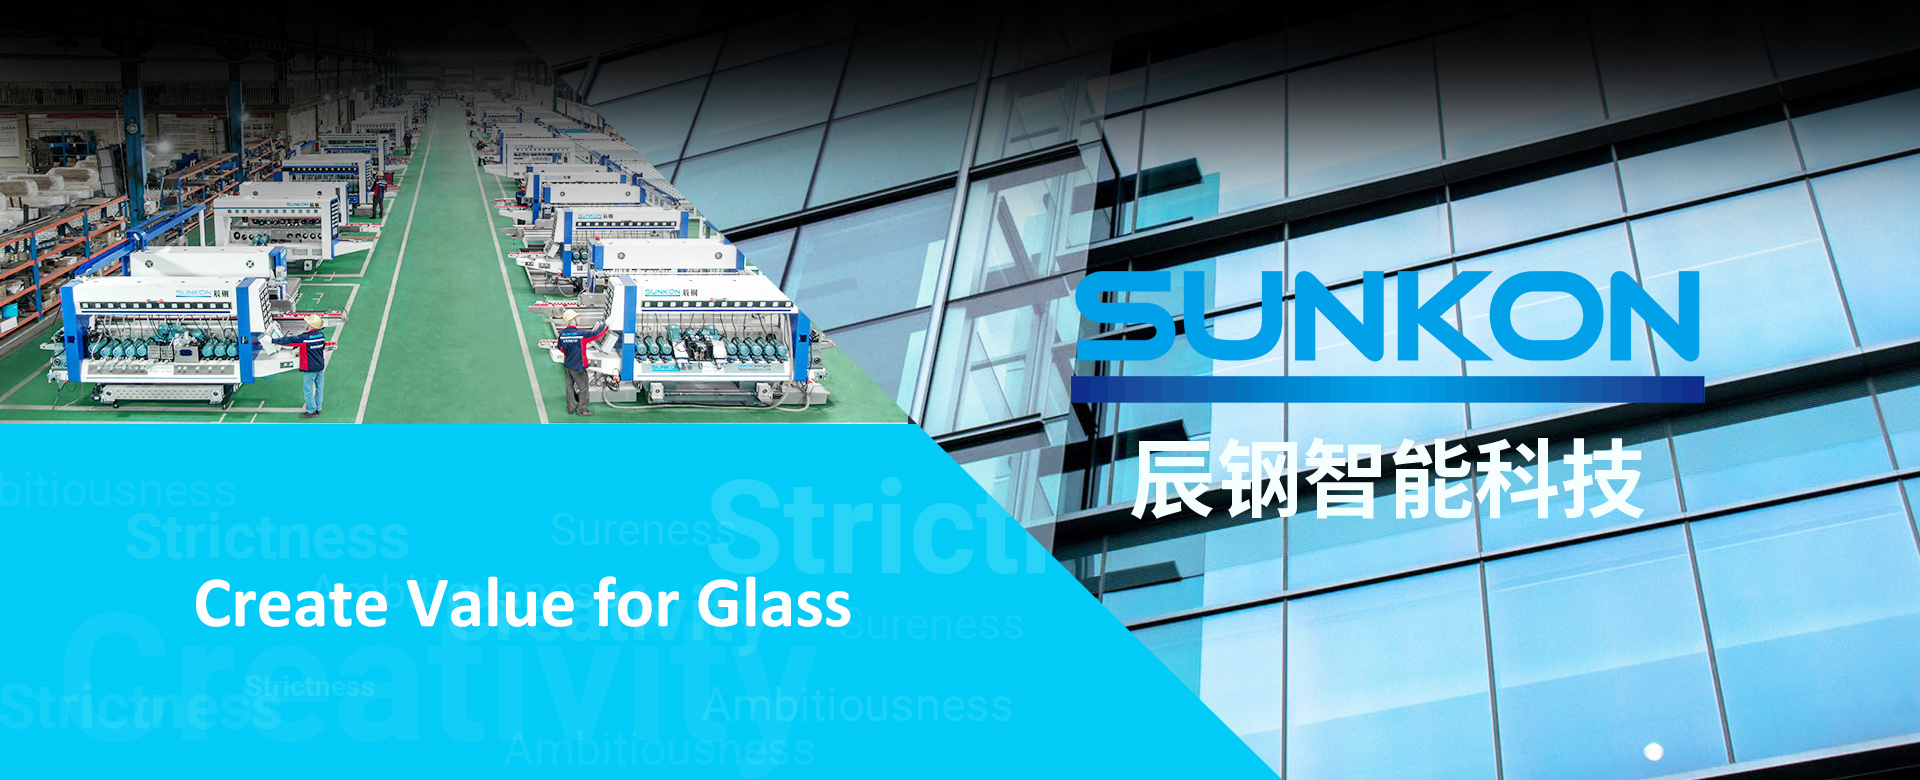 SUNKON glasmachine - banner